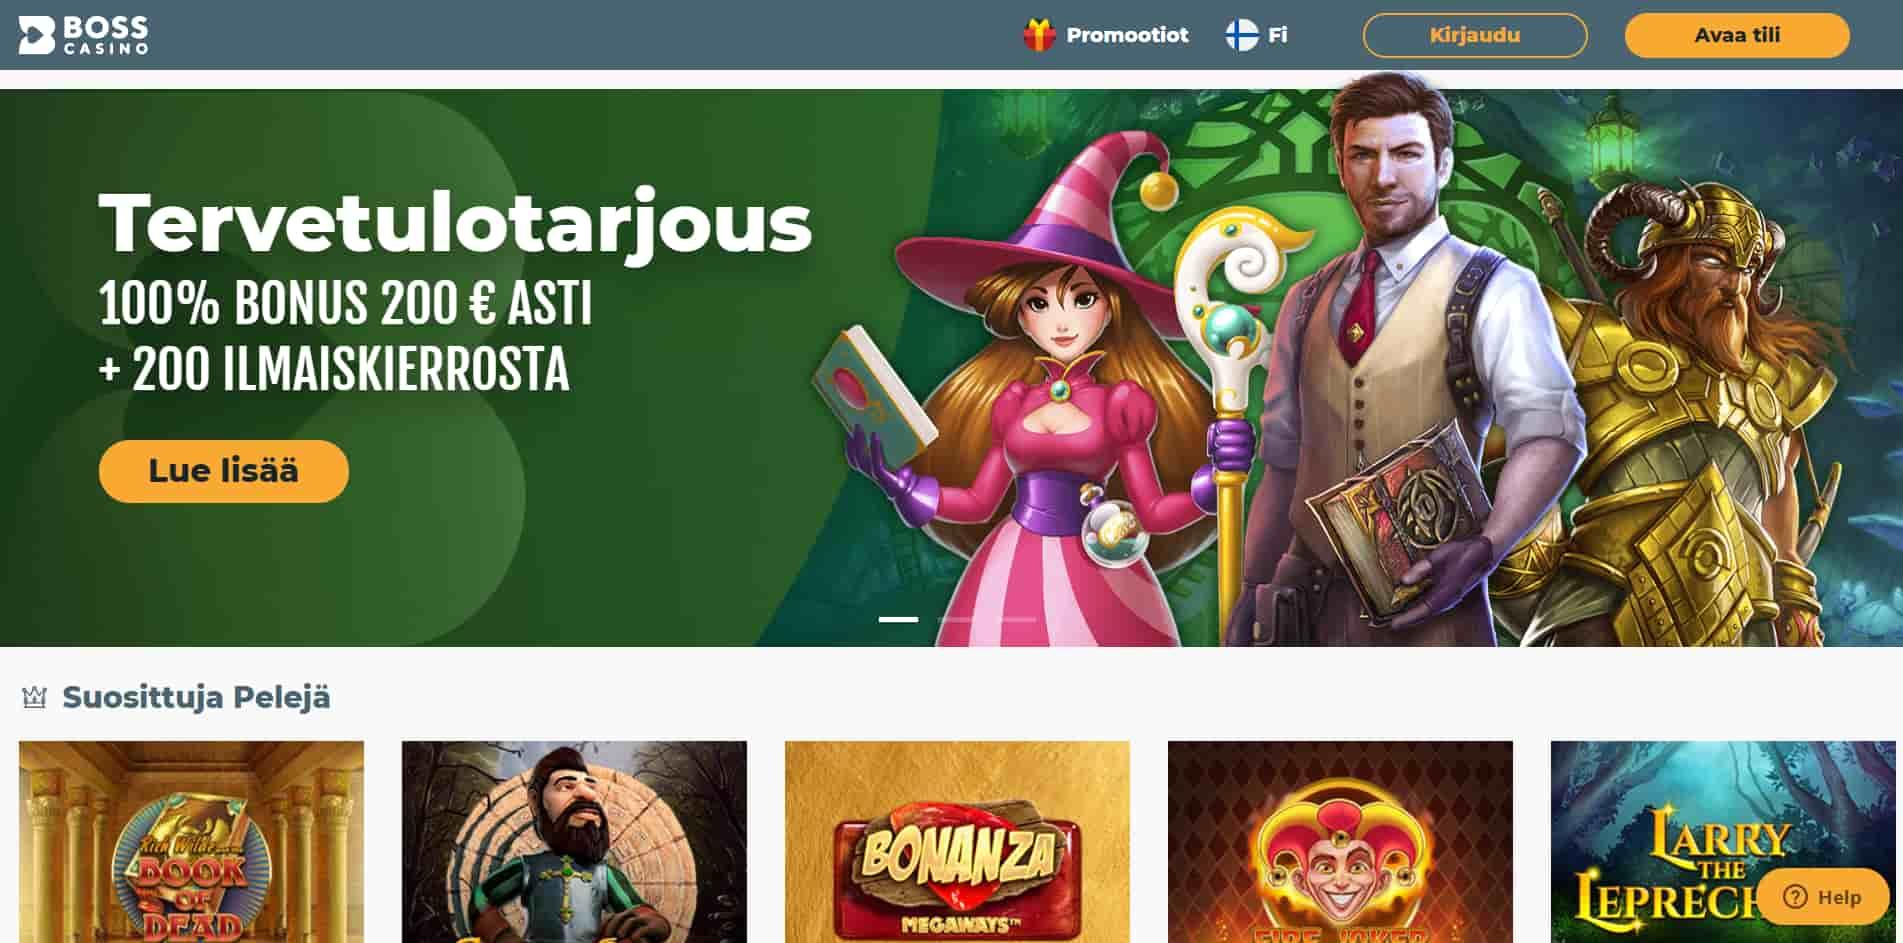 Boss casino homepage